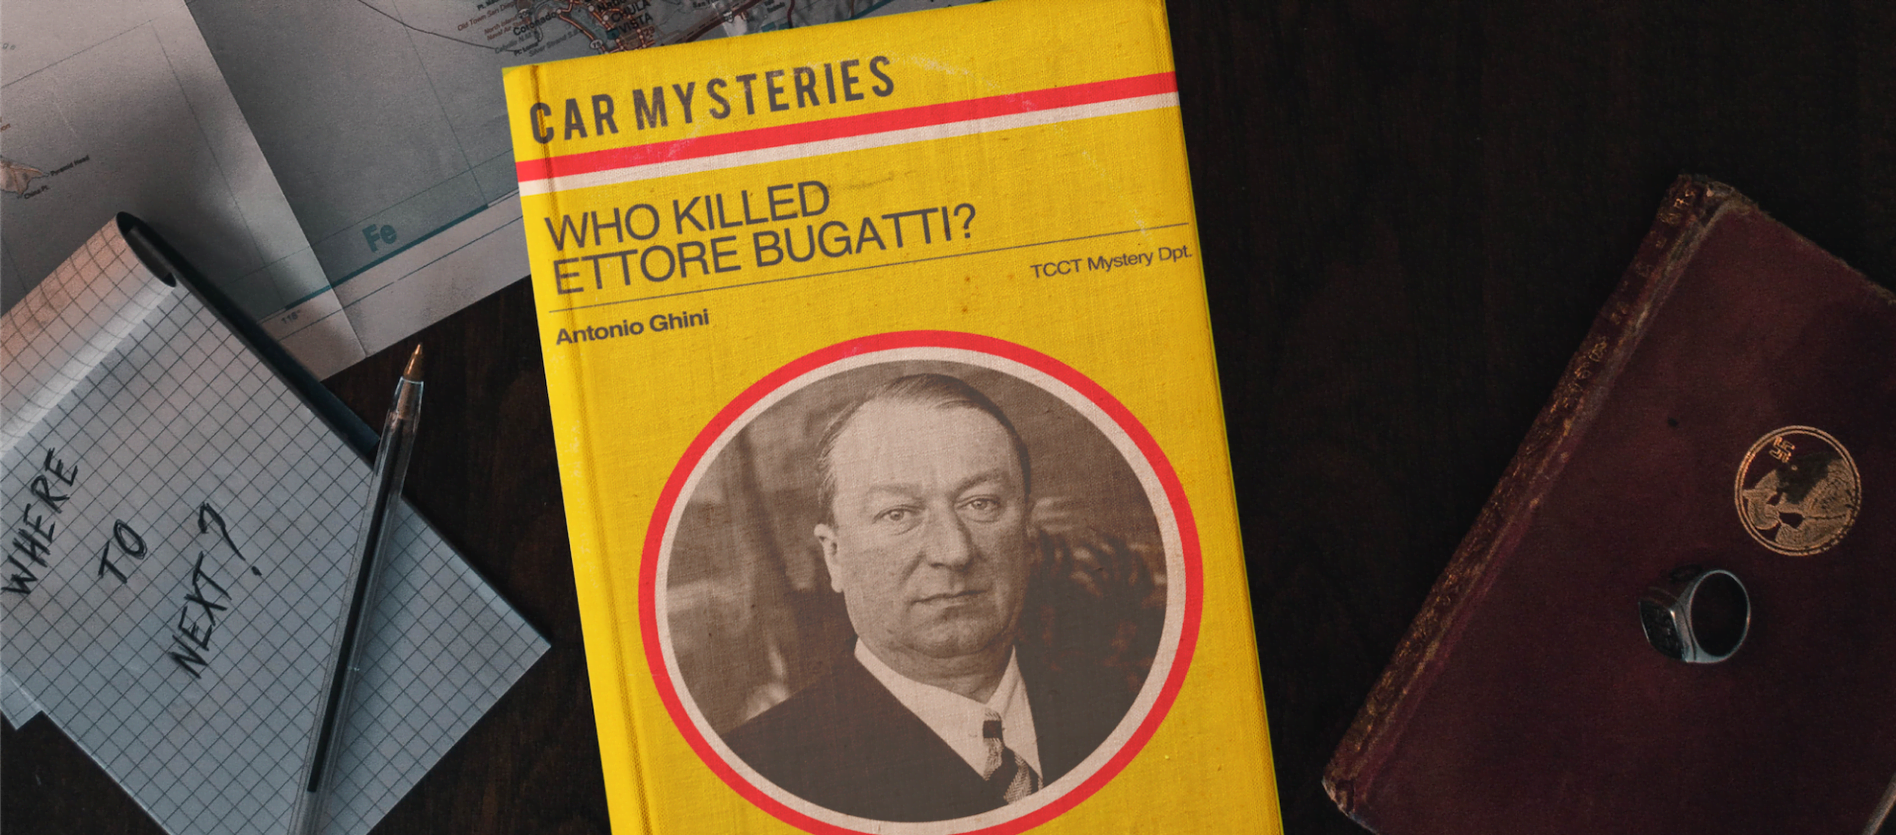 Who killed Ettore Bugatti? image